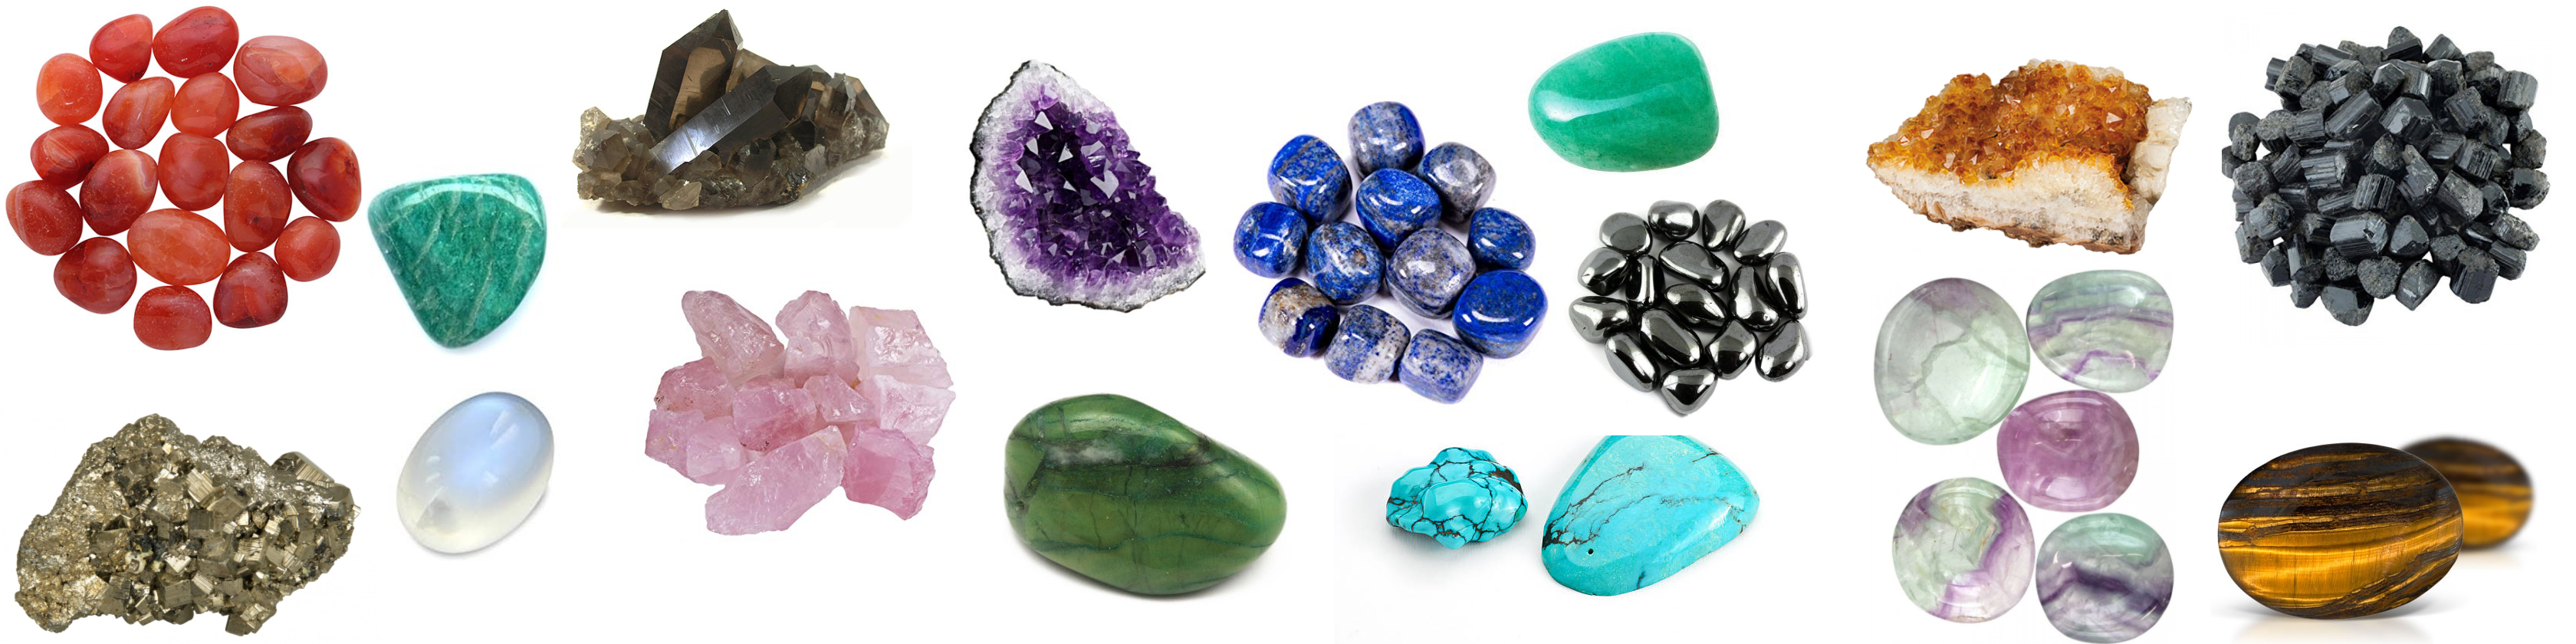 The Healing Properties of 20 Crystals & Gemstones.